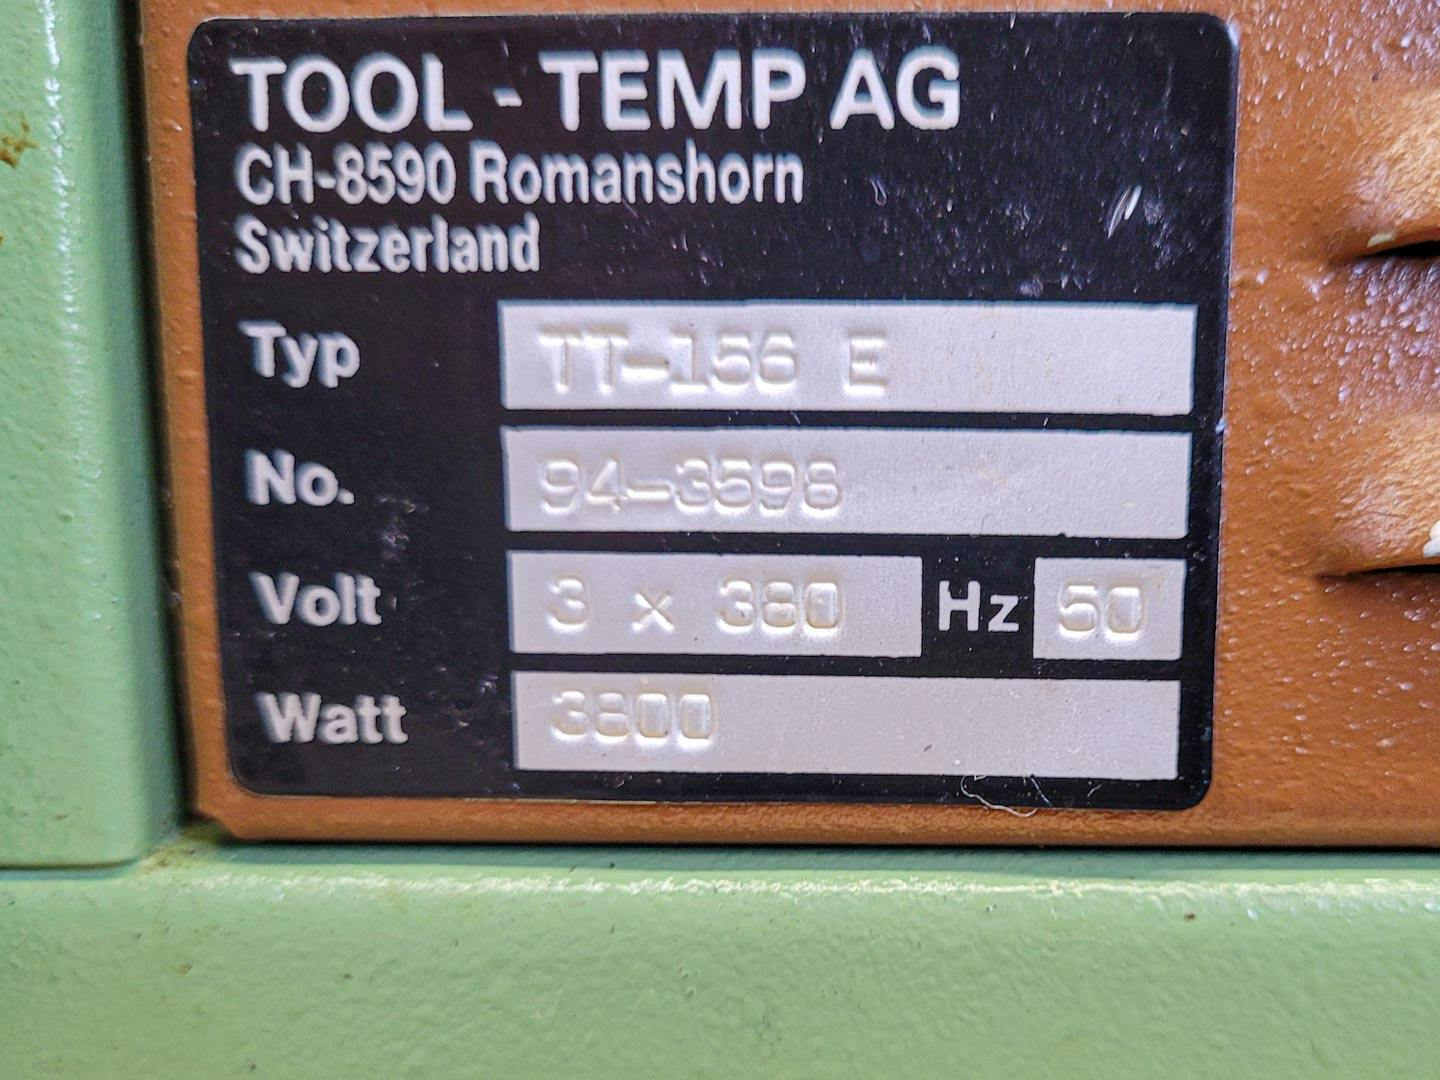 Tool-temp TT-156E - Temperature control unit - image 8